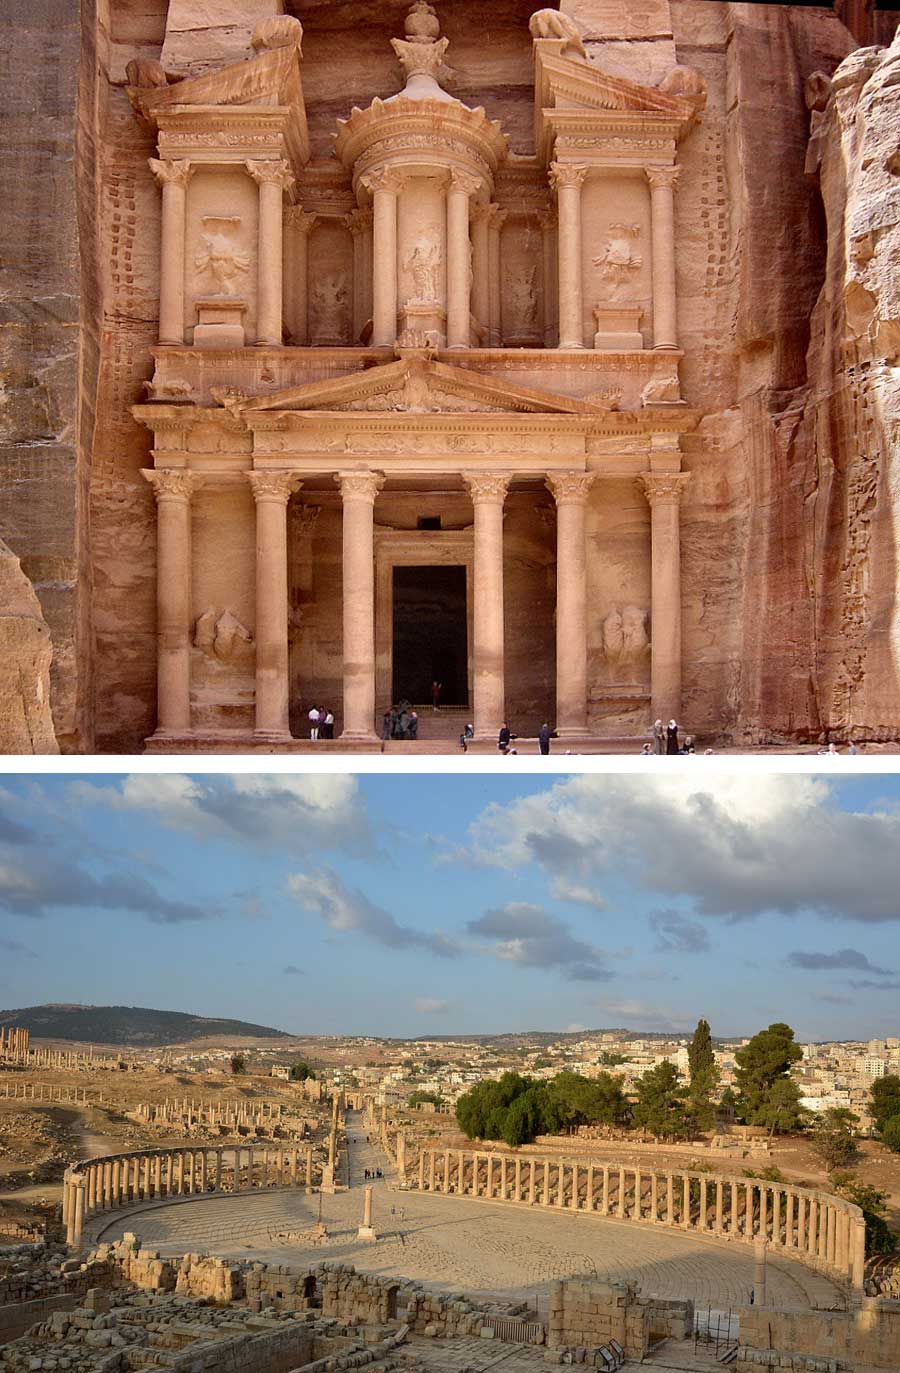 Fakta: Petra och Jerash är de mest kända turistattraktionerna i Jordanien